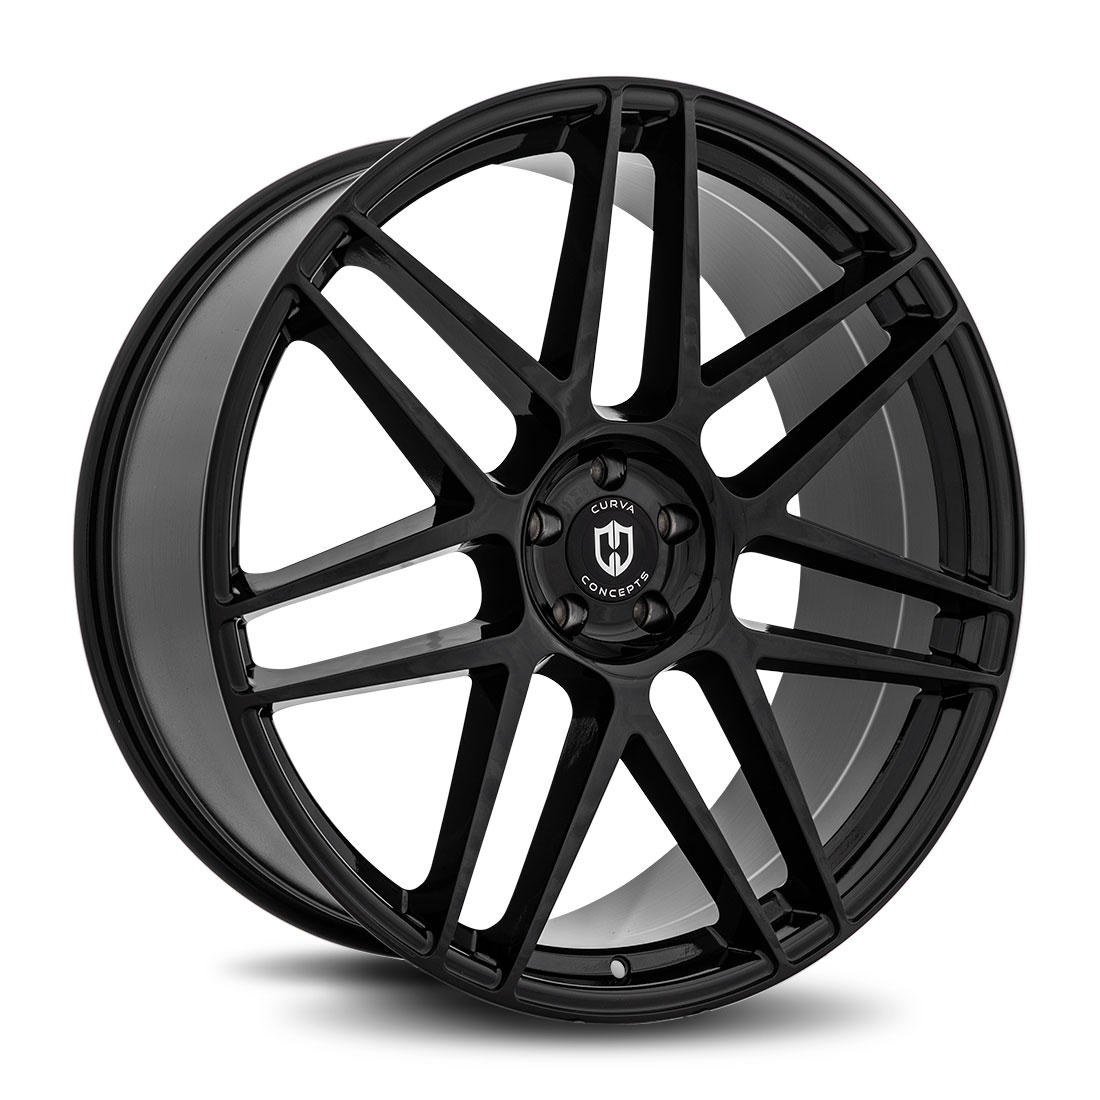 Curva Concepts Gloss Black 20" Aftermarket Wheels